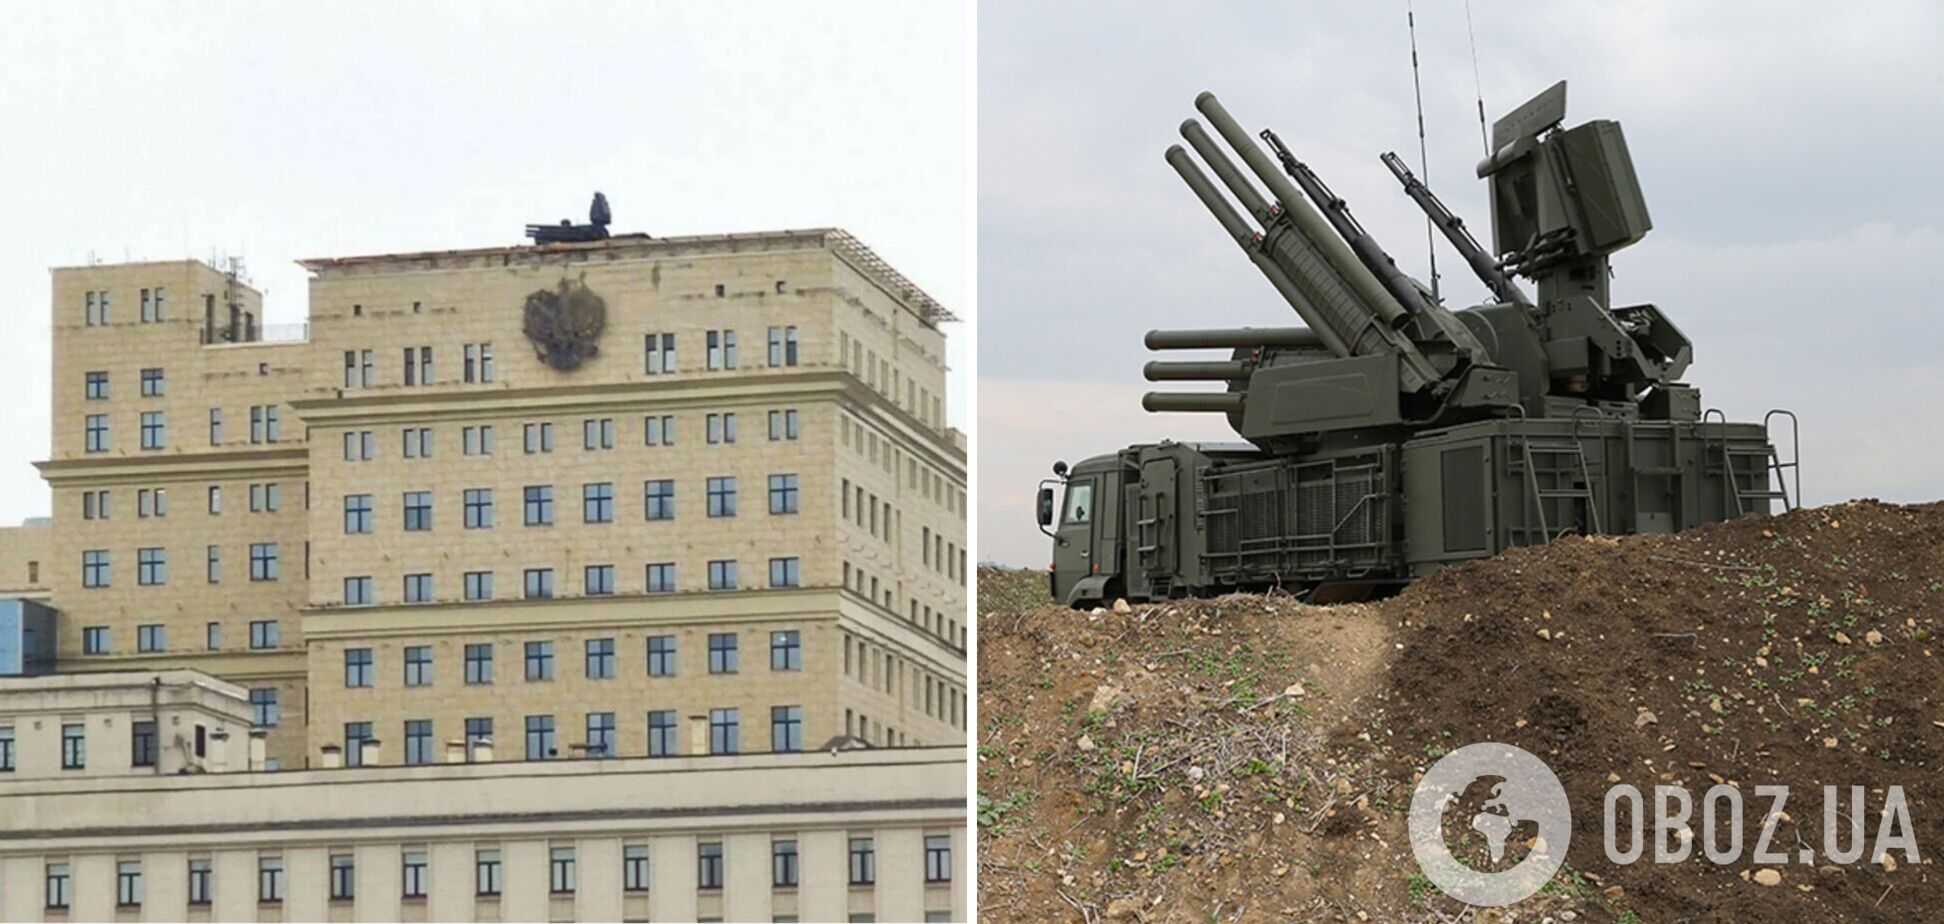 Никакого купола над Москвой нет: военный эксперт объяснил 'эффект' от 'Панцирей' на крышах зданий. Видео